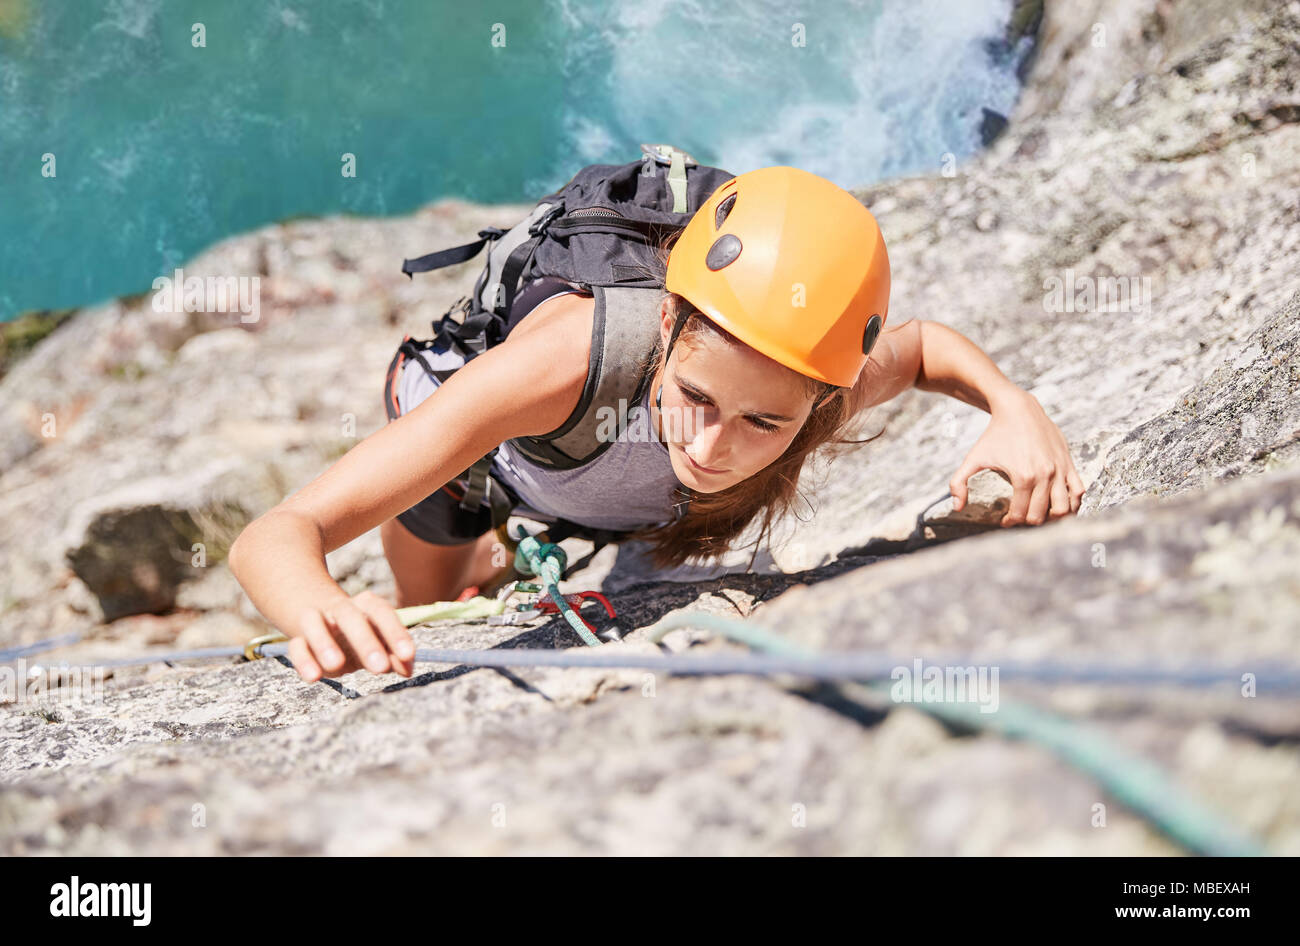 Enfocada, decidida mujer escalador escalar roca Foto de stock